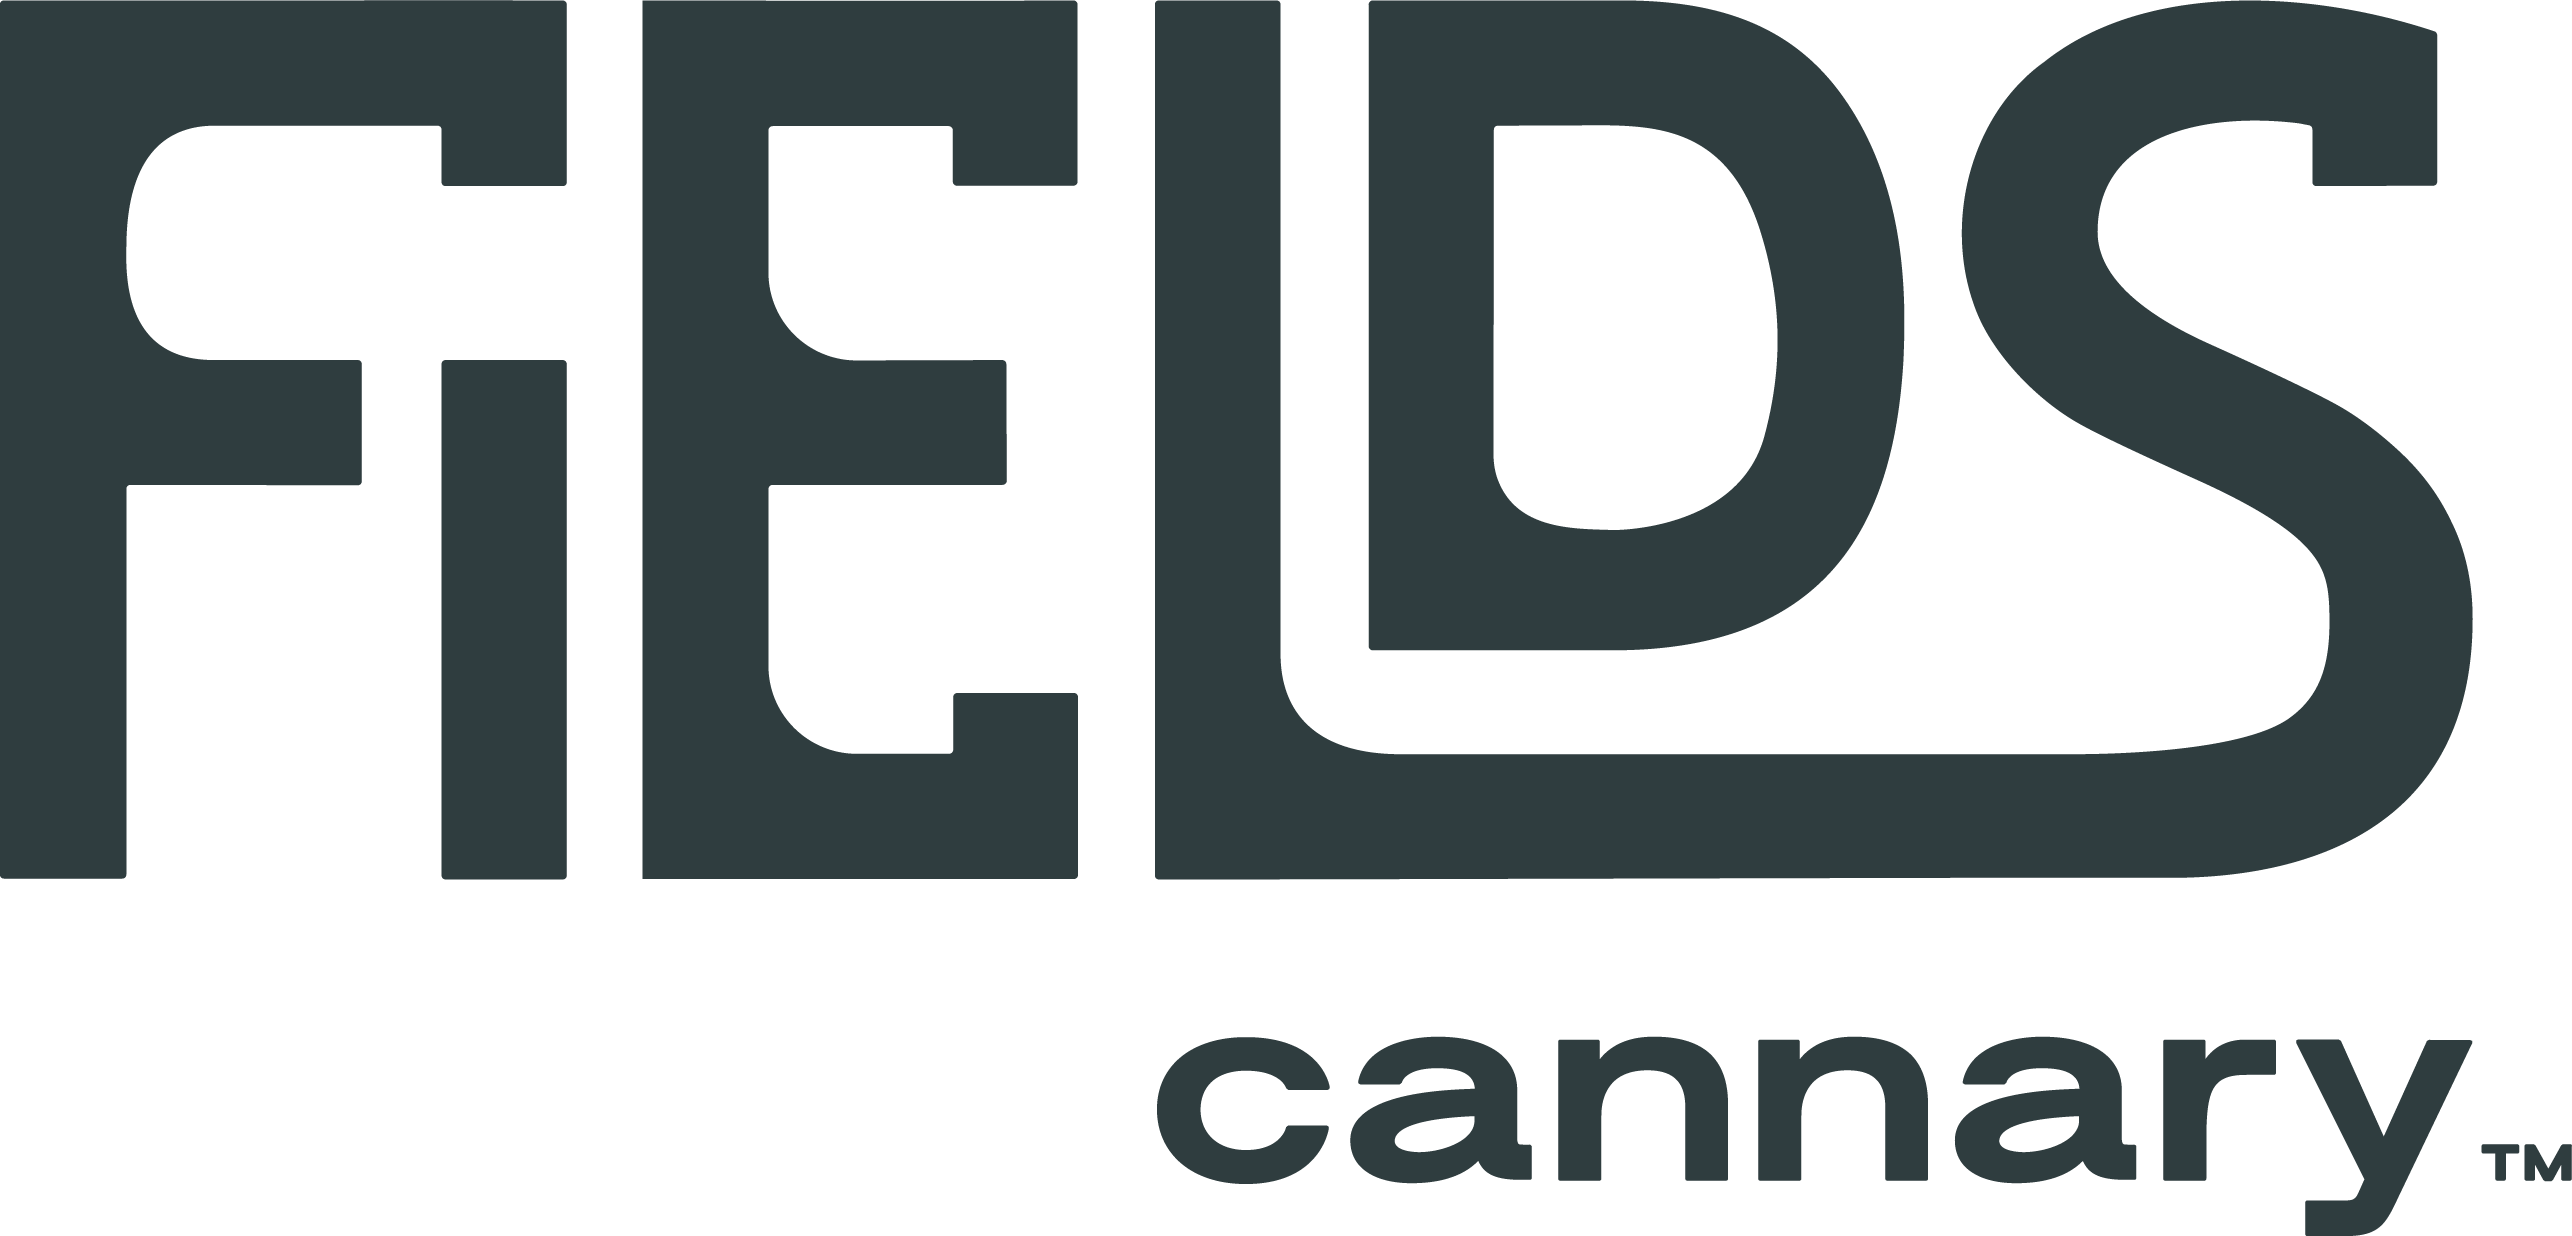 Fields Cannary Webinar Recap Available